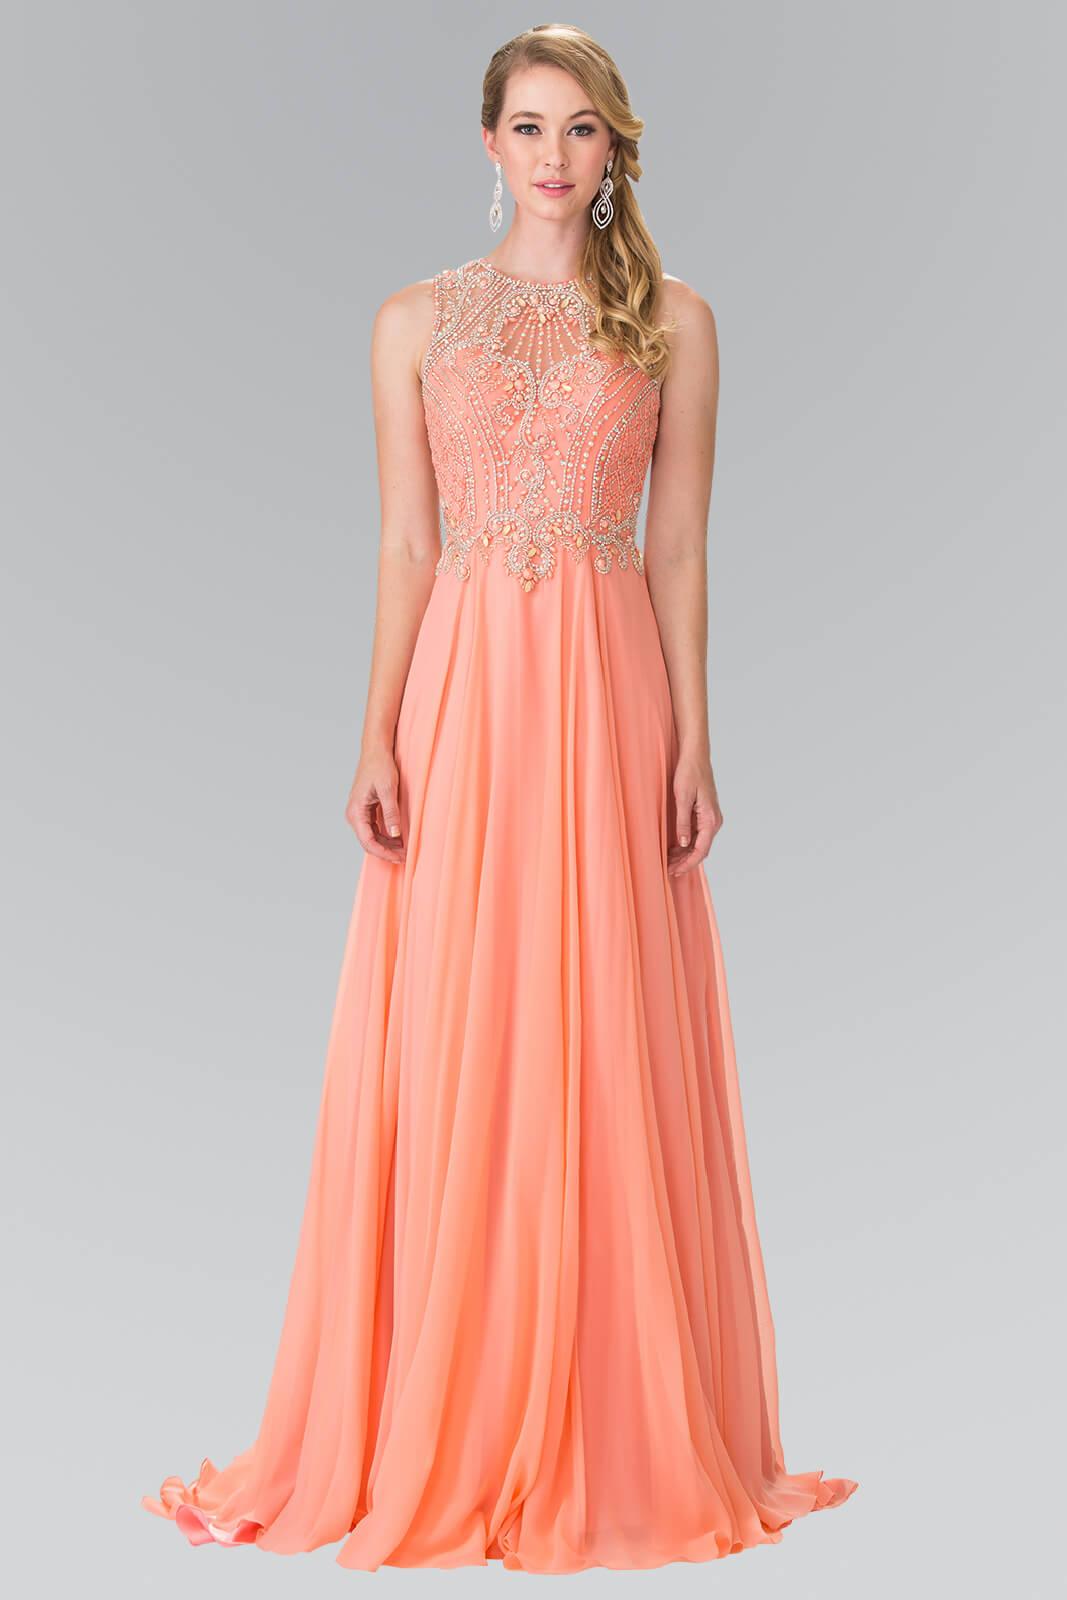 Long Prom Dress Formal Evening - The Dress Outlet Elizabeth K